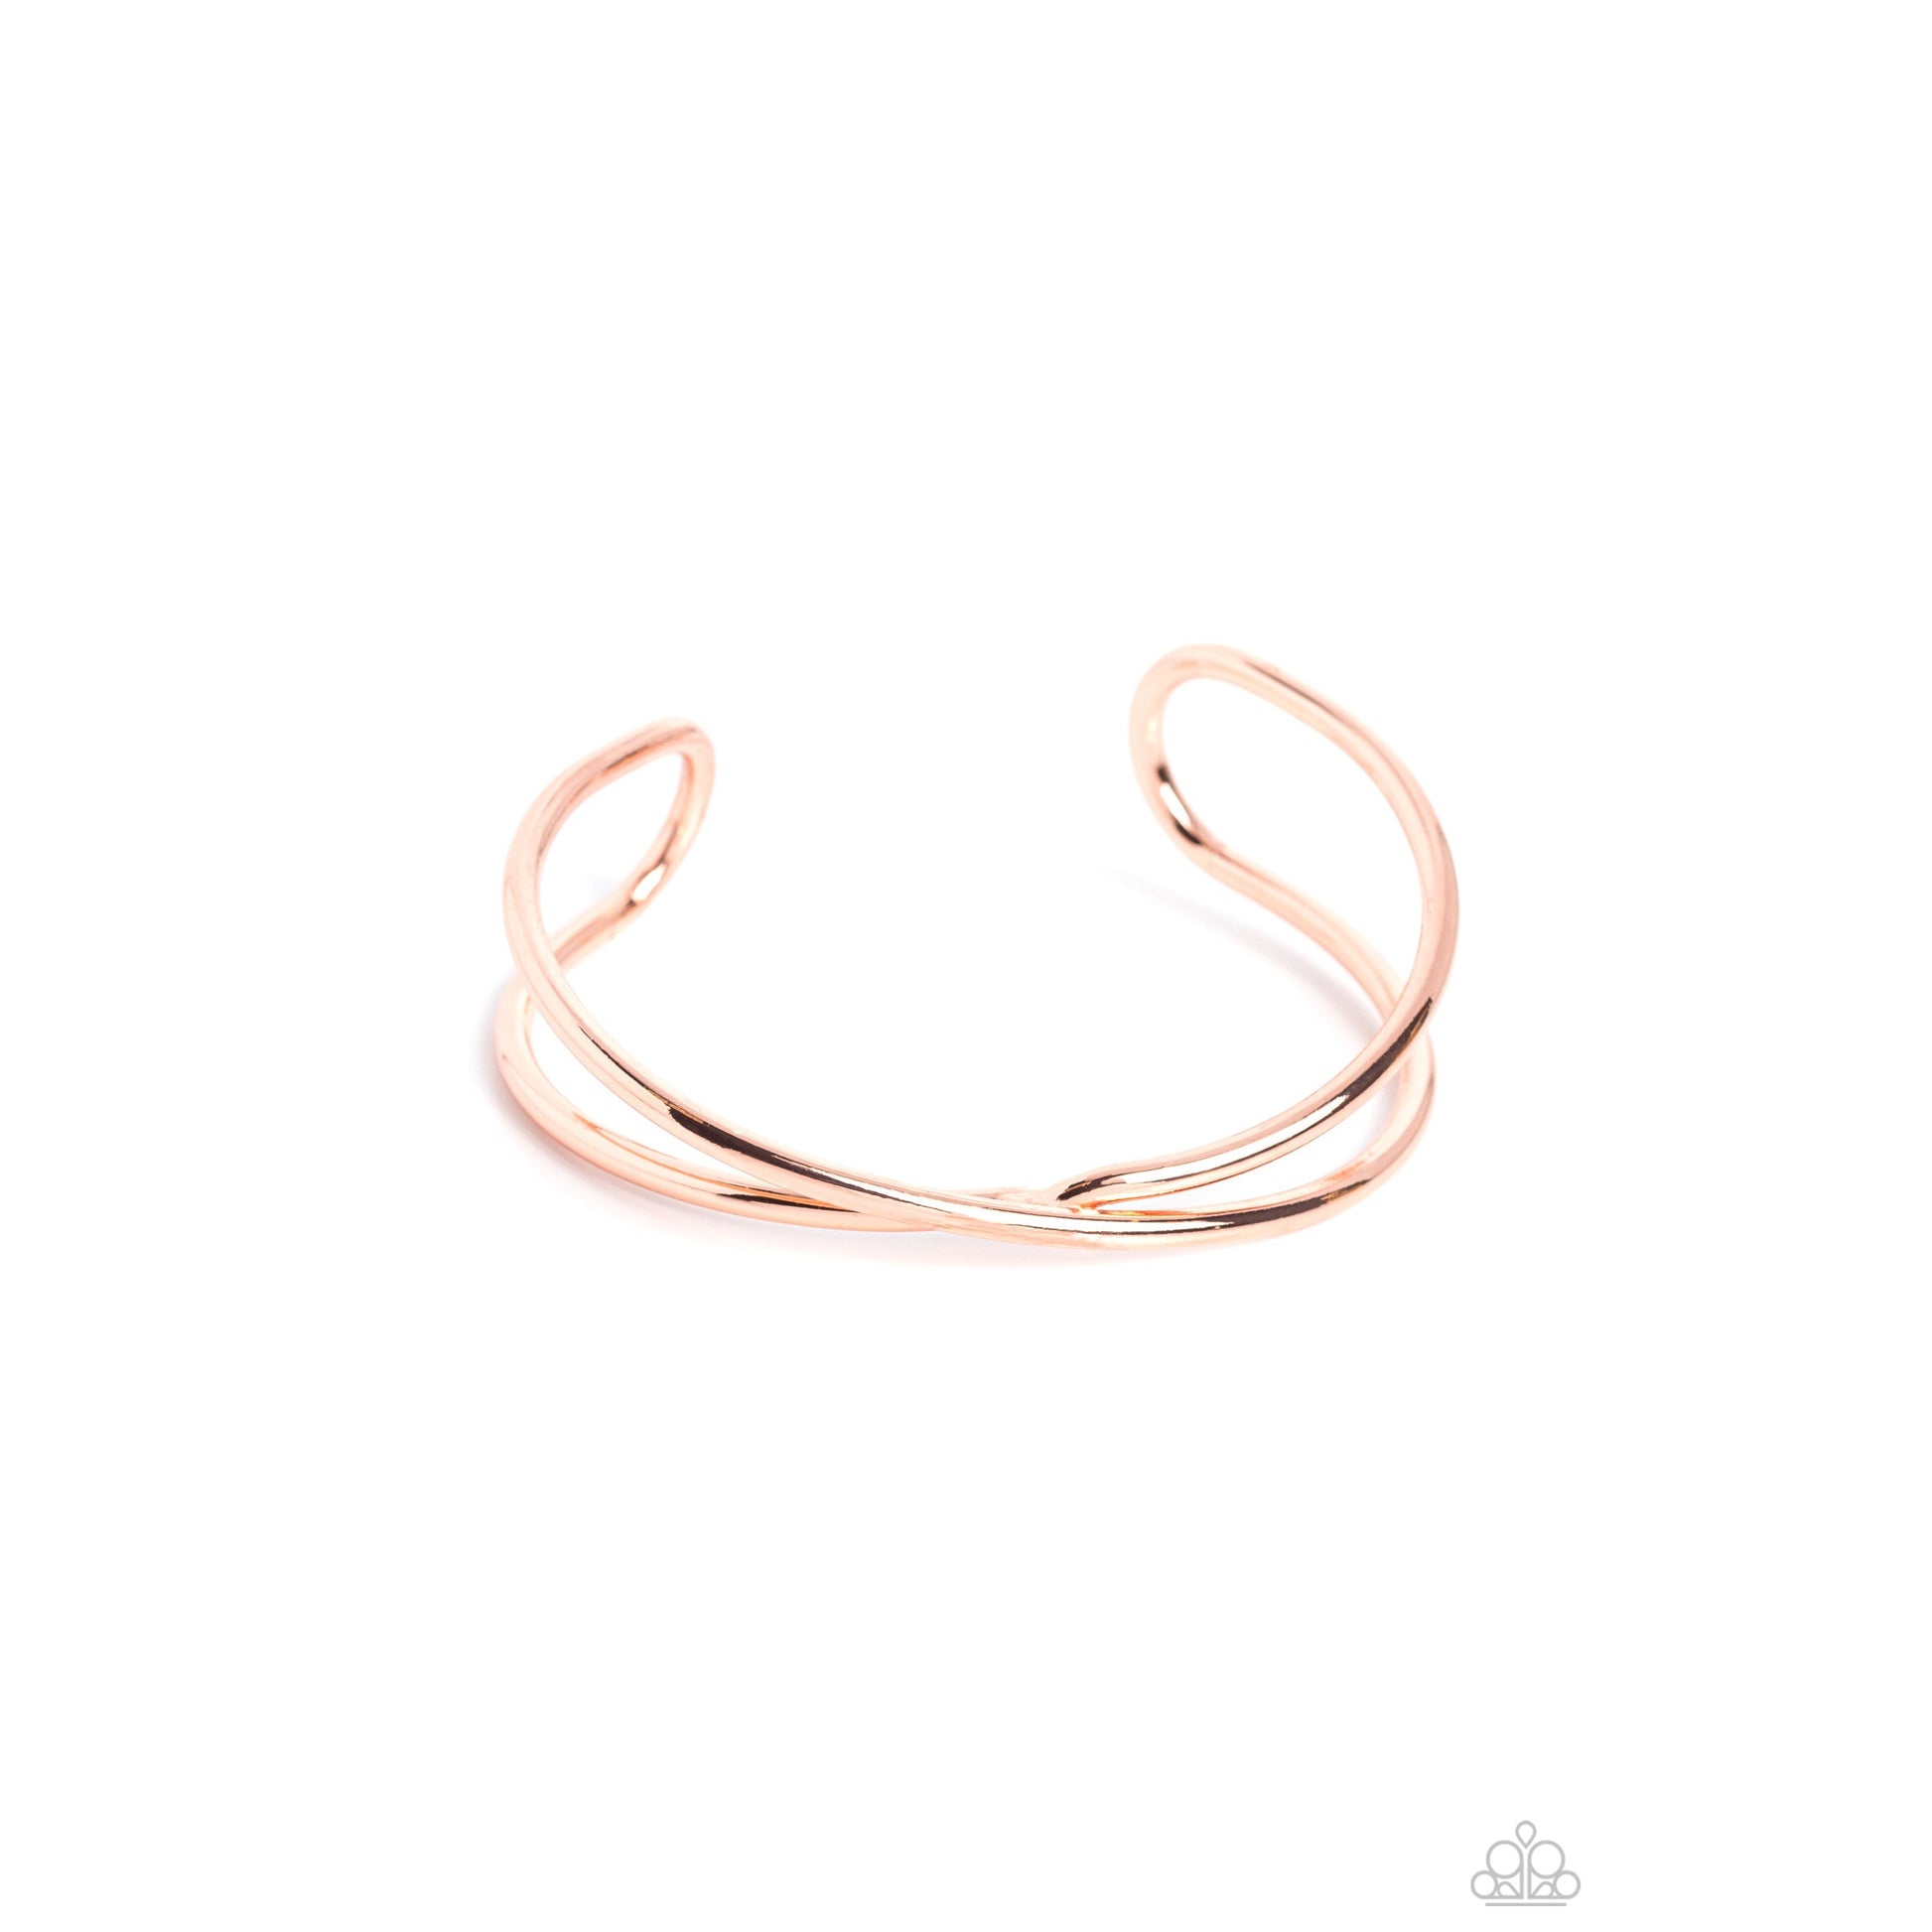 Teasing Twist - Copper Bracelet - Bling by Danielle Baker